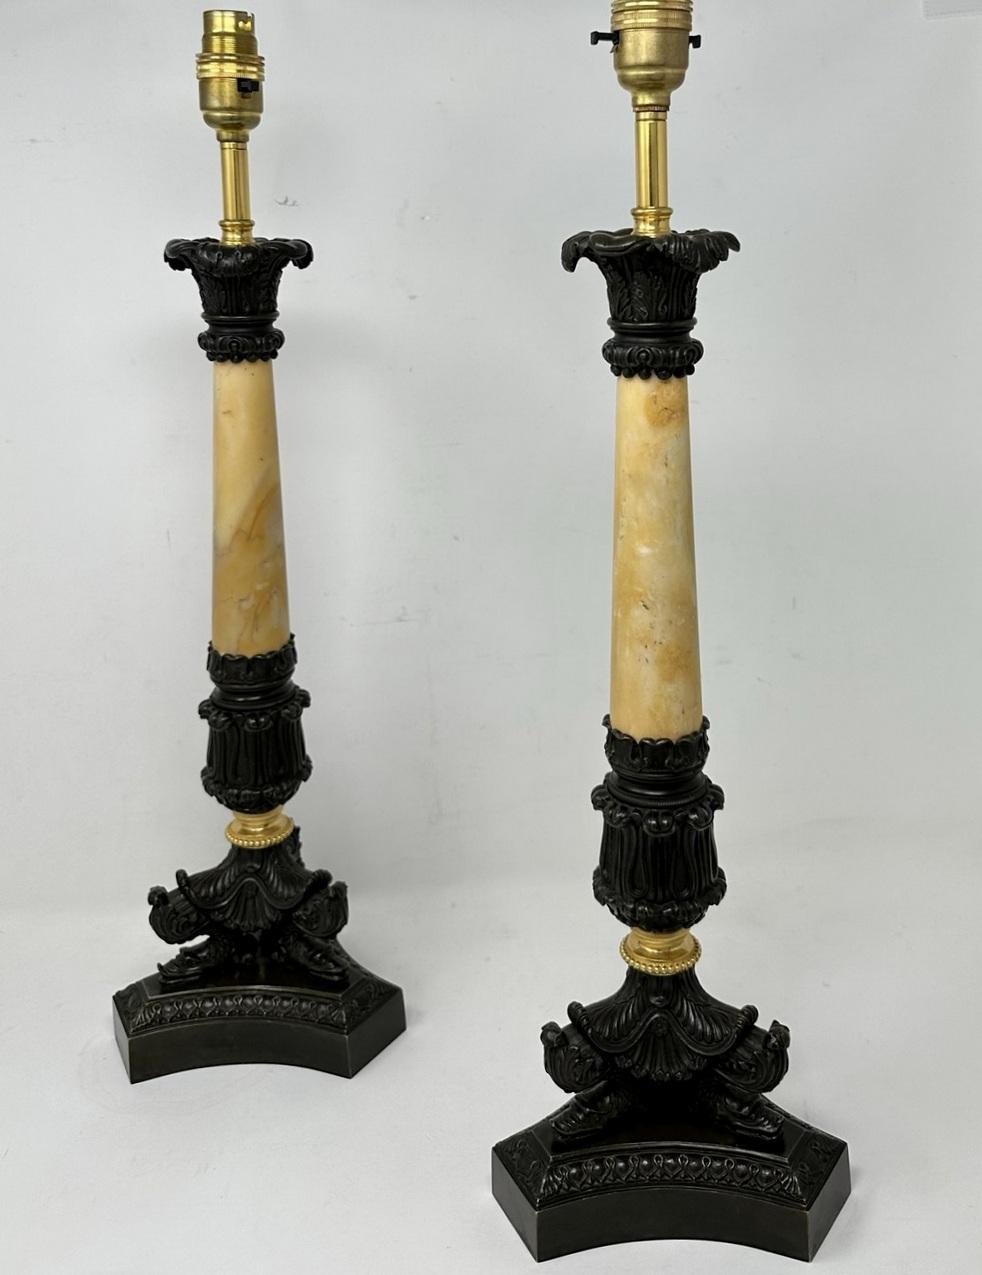 Ein außergewöhnlich feines Paar Französisch Ormolu und patiniert Bronze frühen viktorianischen Single Light Candlesticks von ziemlich hoch und groß Proportionen, jetzt zu einem erstaunlichen Paar elektrische Tischlampen umgewandelt, in